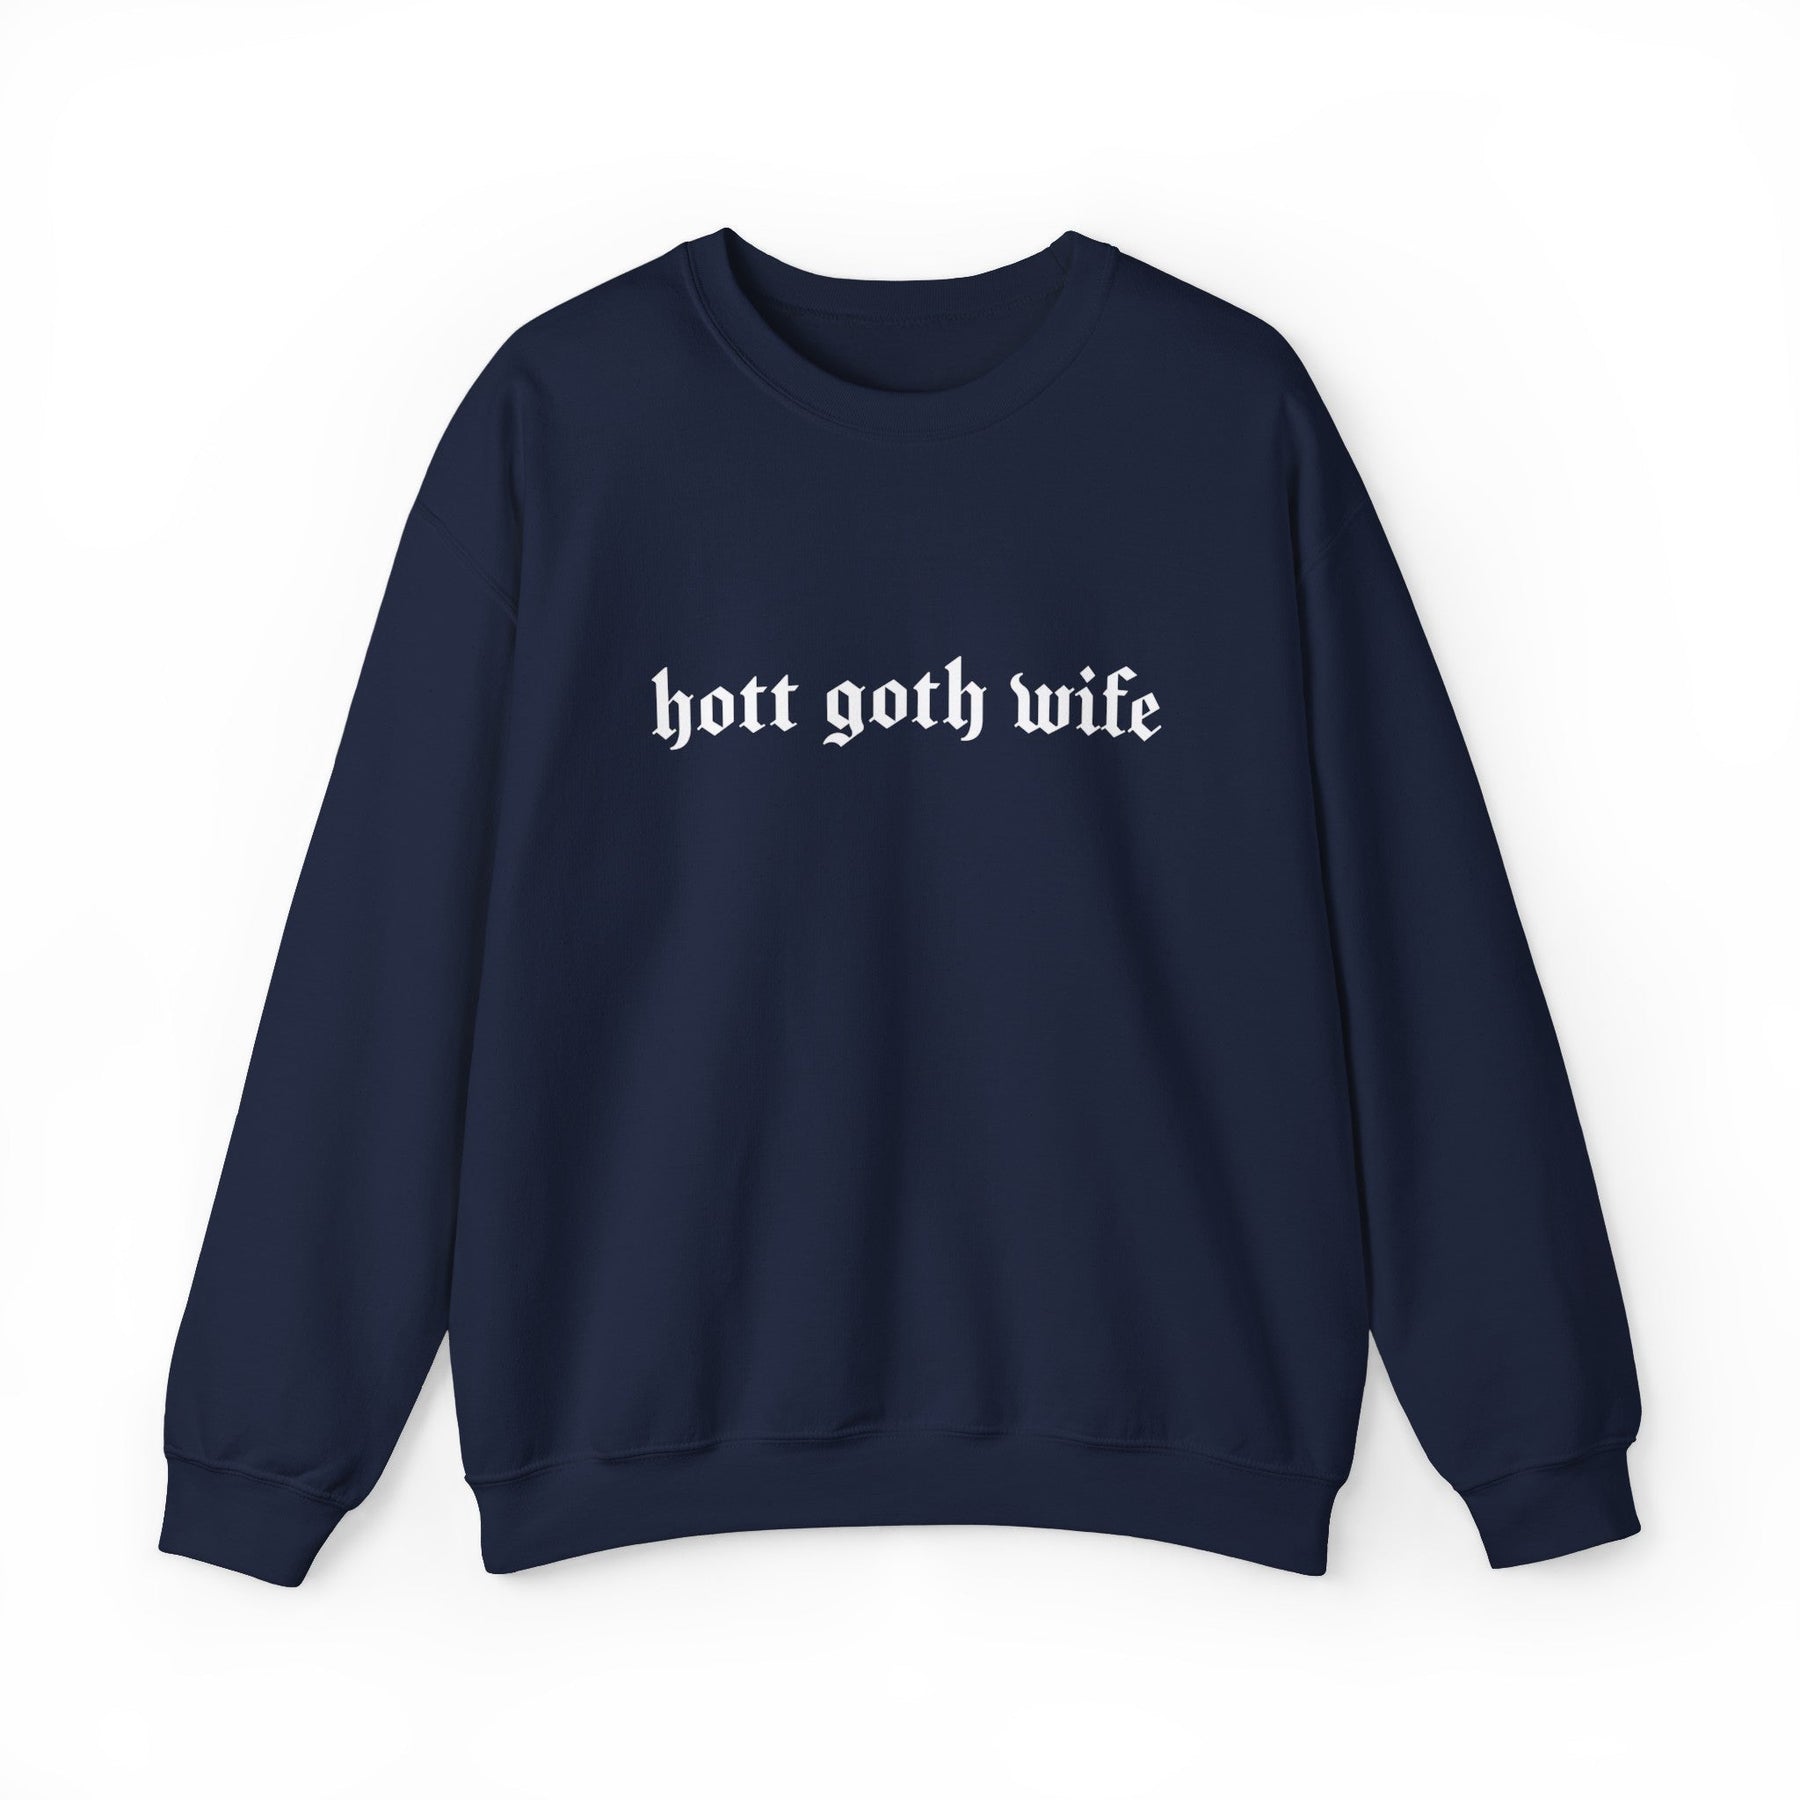 Hott Goth Wife Long Sleeve Crew Neck Sweatshirt - Goth Cloth Co.Sweatshirt29998484986375186113